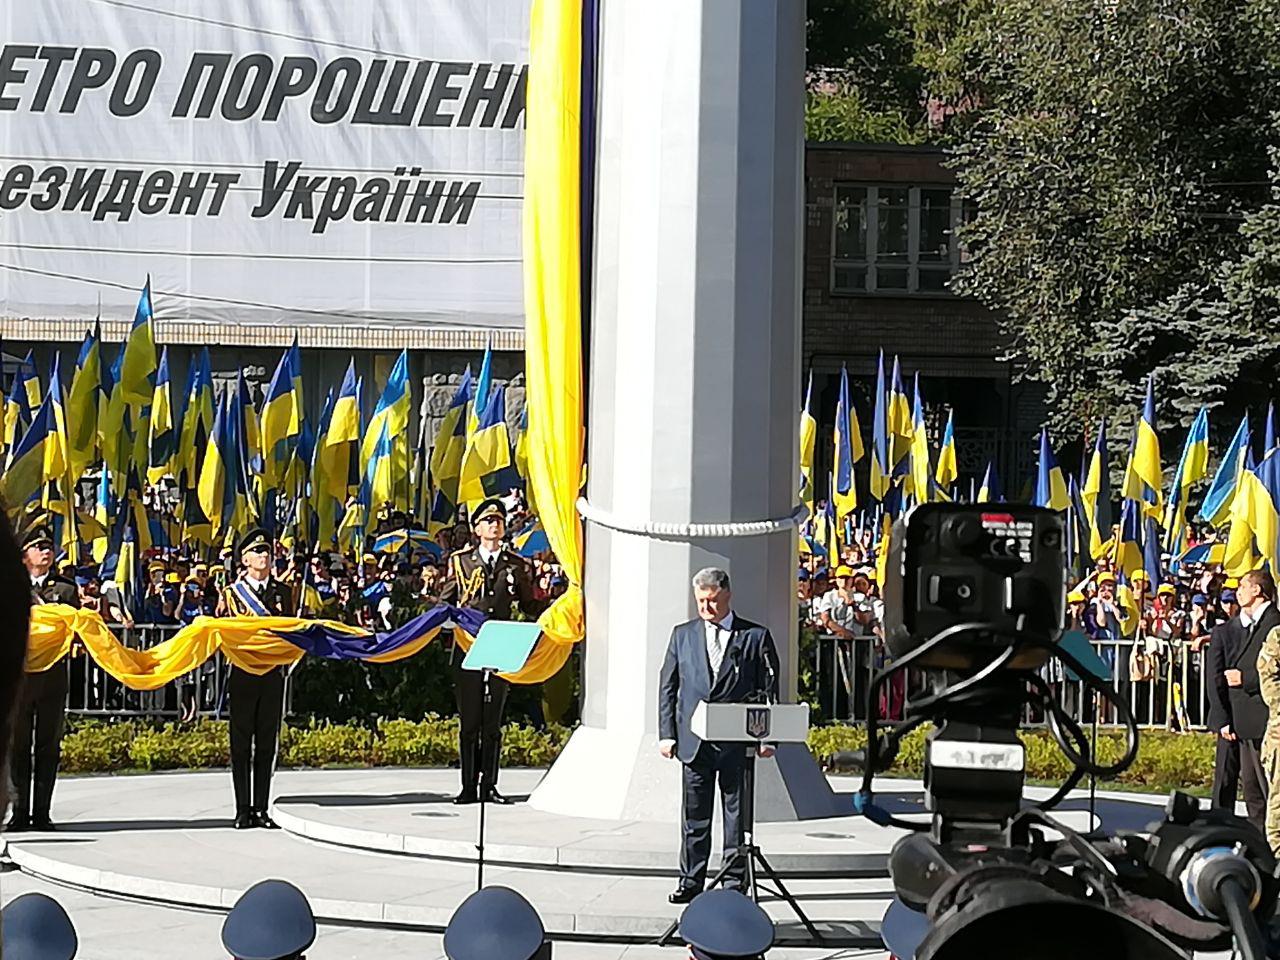 Самый большой флаг в Украине меняют 24 раза в год: на это тратят 900 тысяч гривен